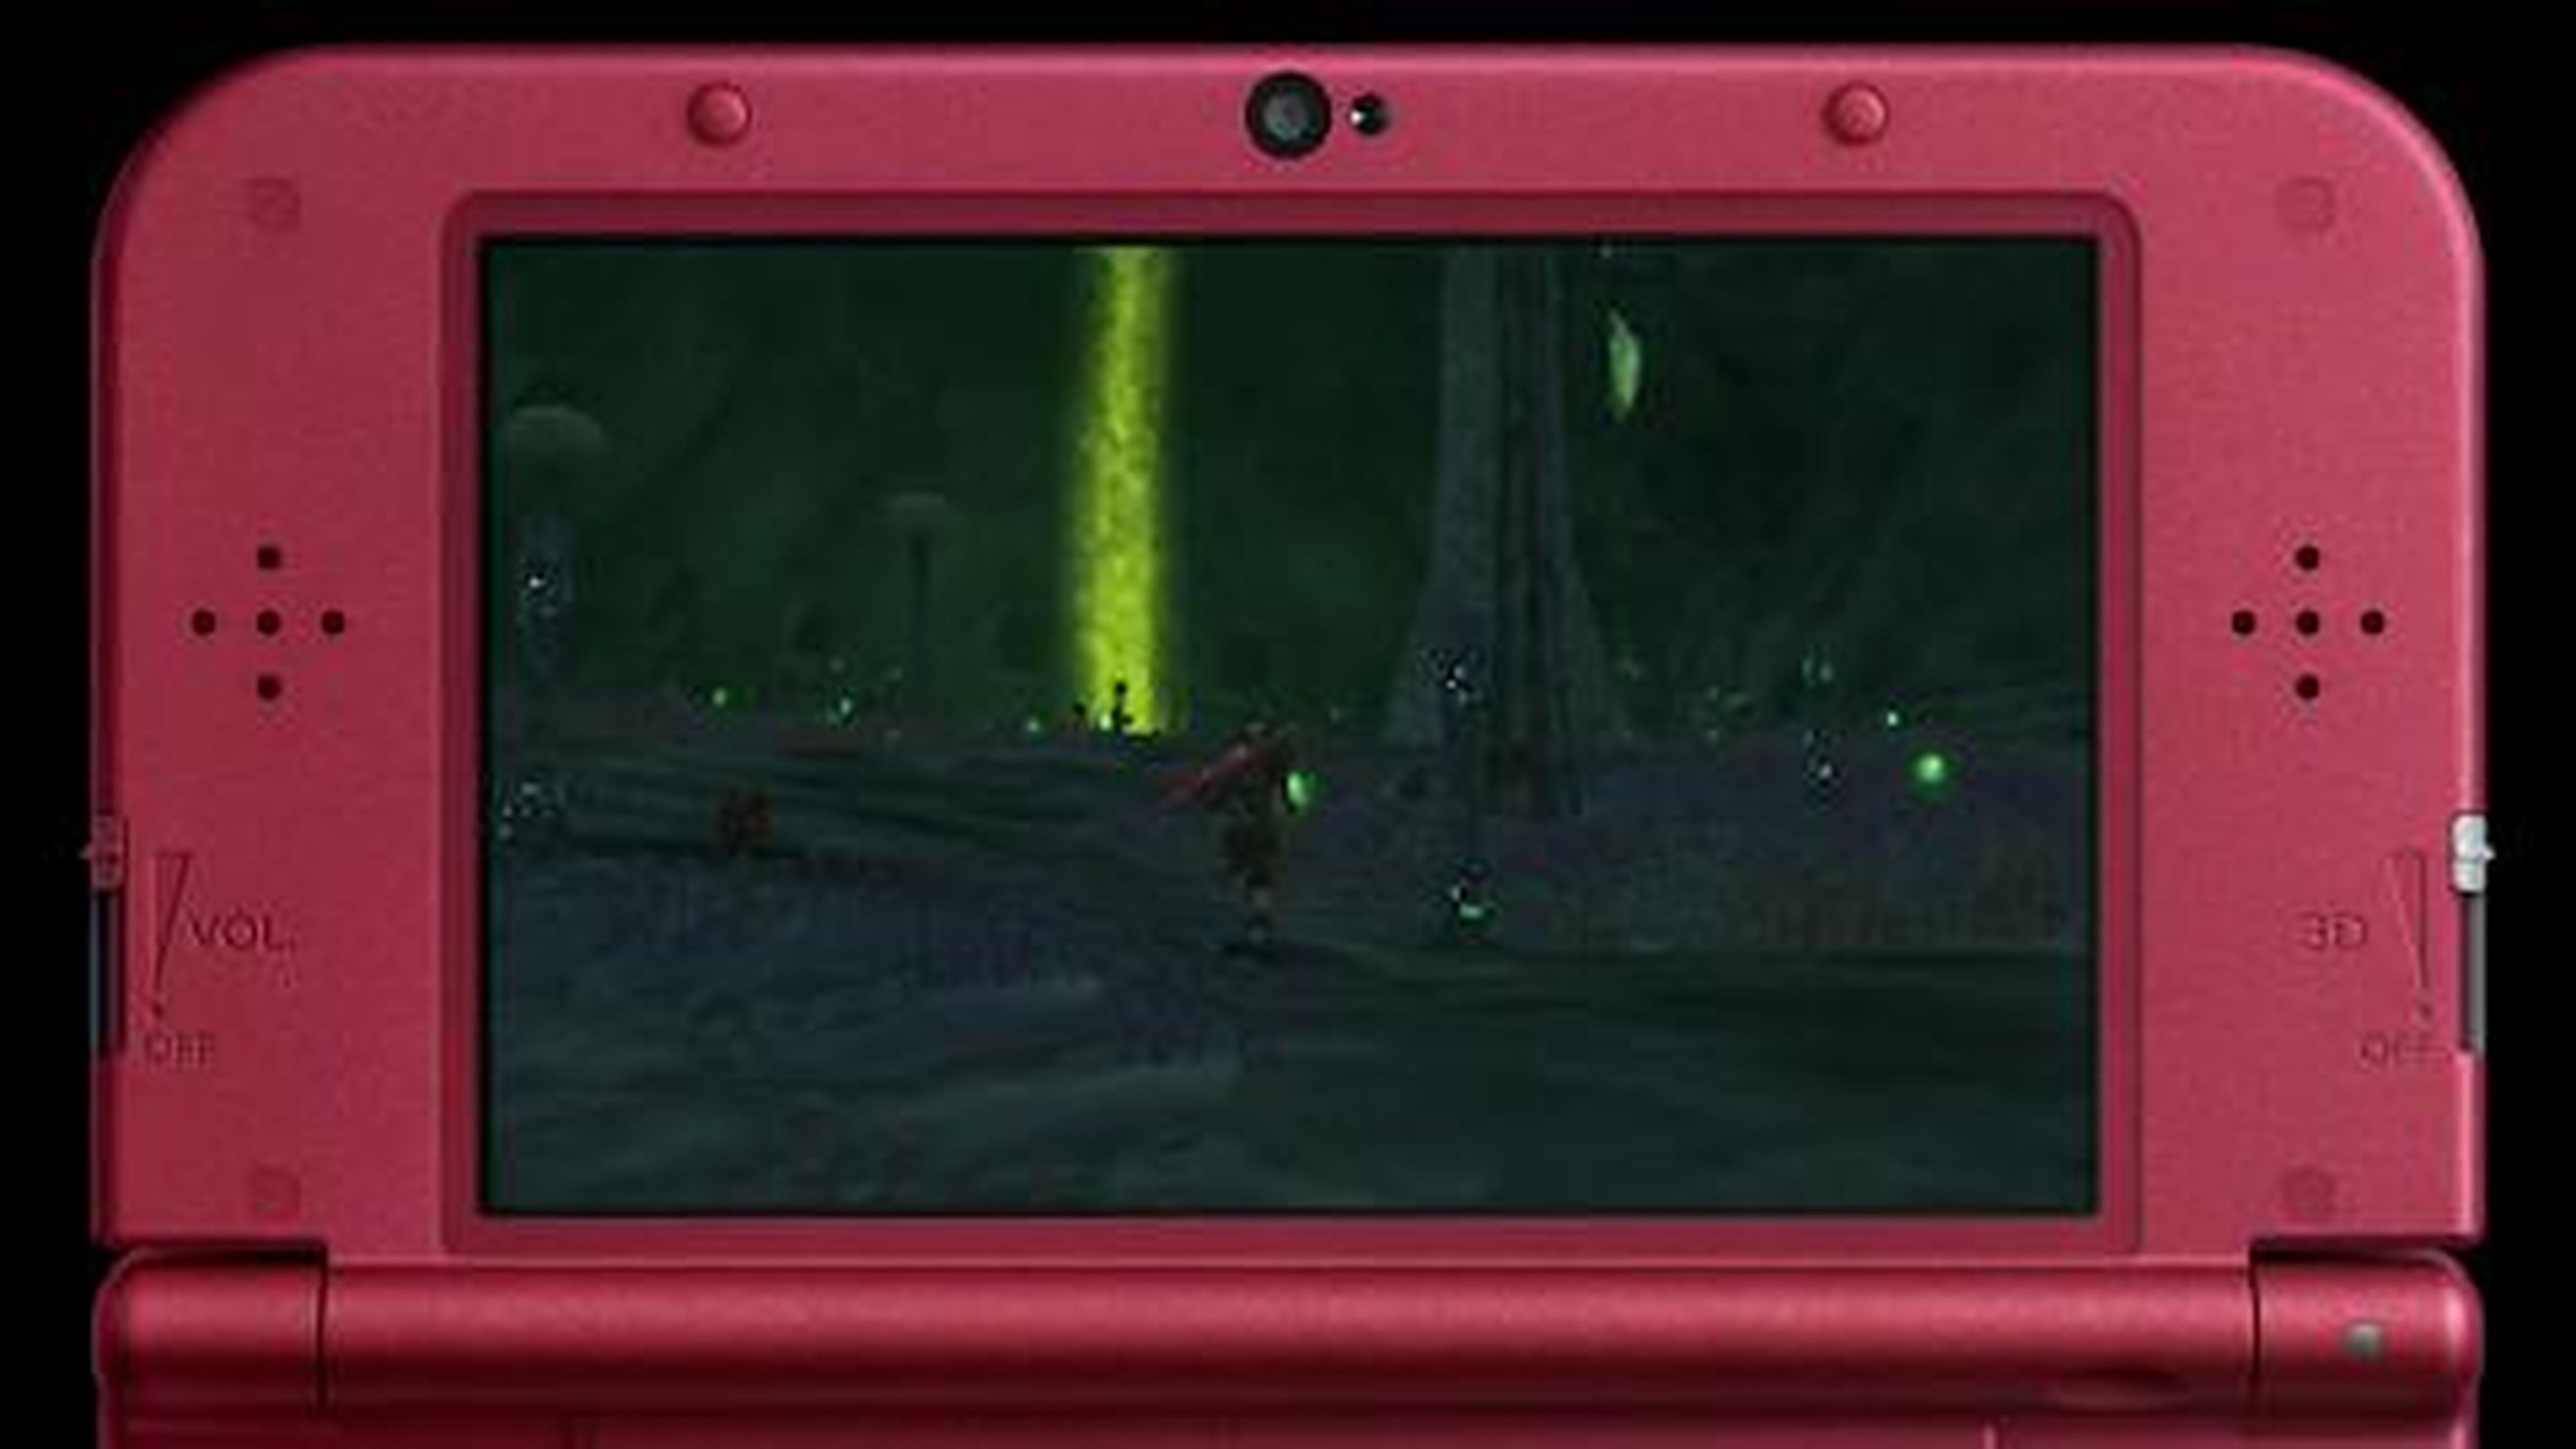 New Nintendo 3DS XL - Xenoblade Chronicles 3D Accolades Trailer